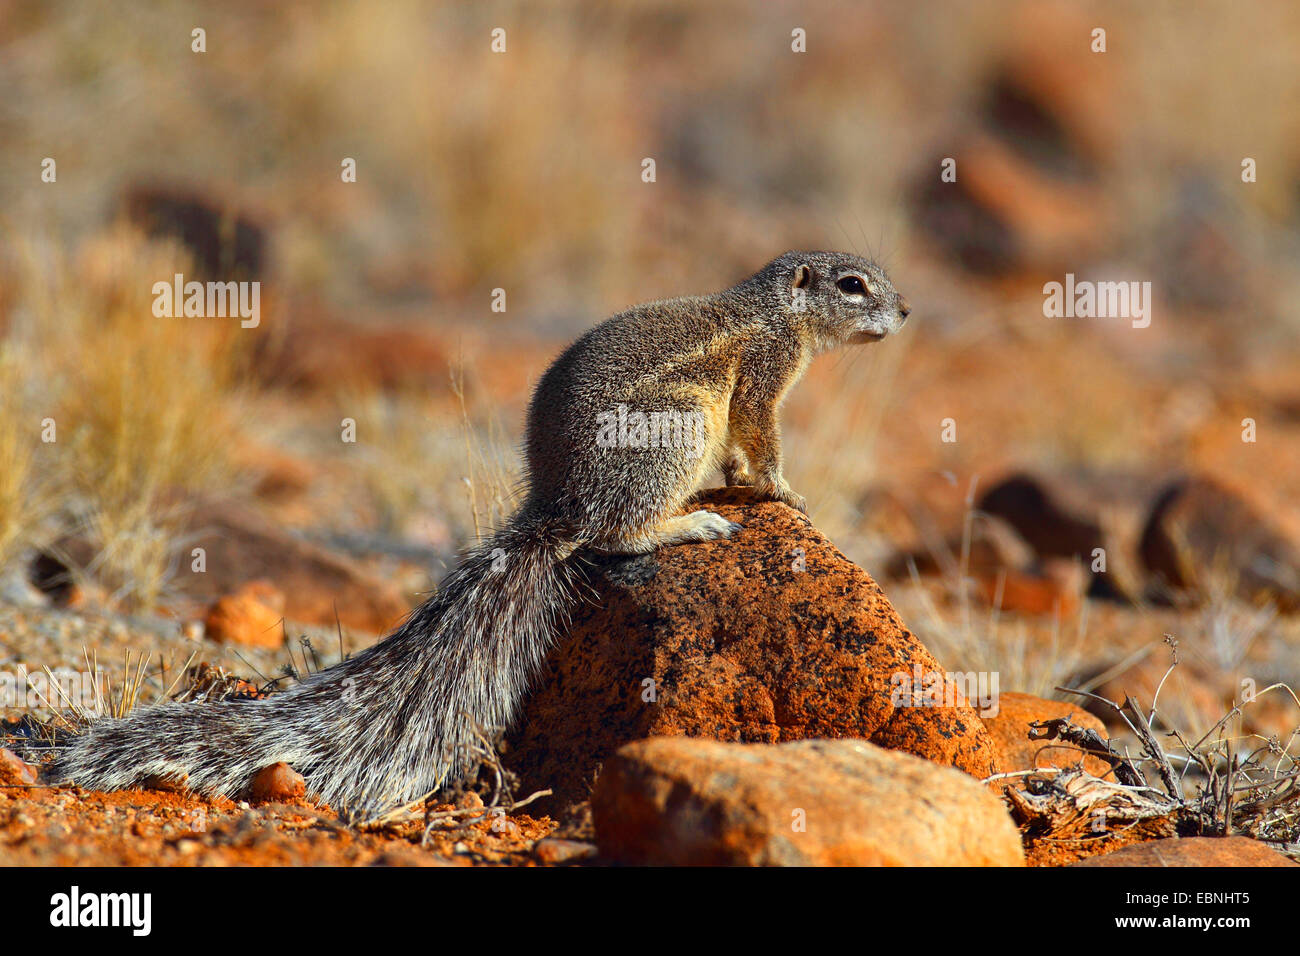 Sudafricano scoiattolo di terra, terra del capo scoiattolo (Geosciurus inauris, Xerus inauris), femmina seduto su di una pietra, Sud Africa, Augrabies Falls National Park Foto Stock